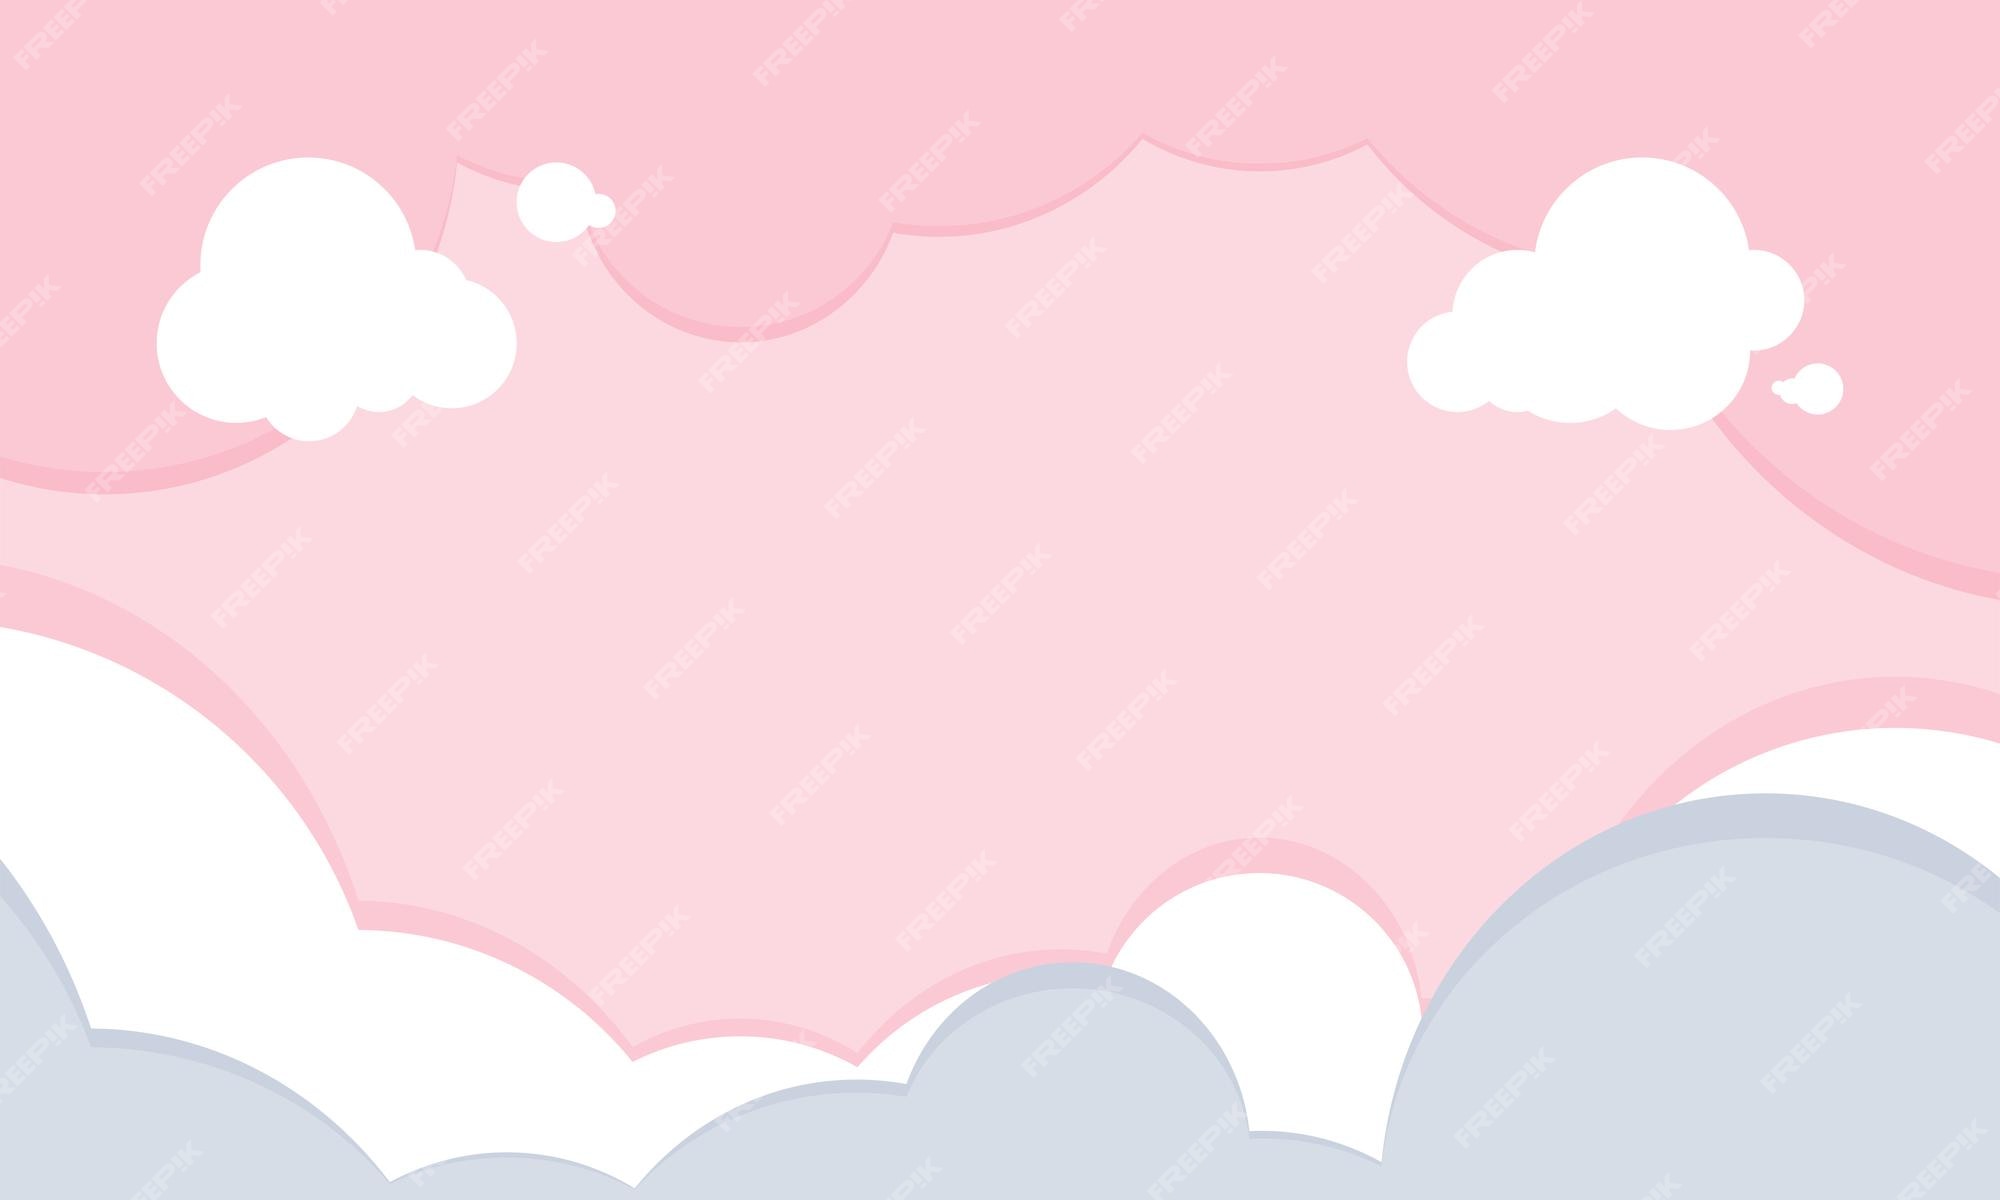 Nền đám mây hồng cartoon bằng phẳng khiến bạn nhớ đến tuổi thơ vui tươi của mình. Bằng màu sắc tươi sáng và hình ảnh đáng yêu mang tính trẻ trung, nền đám mây hồng này sẽ khiến bạn cười tươi và muốn nhấp chuột ngay lập tức.